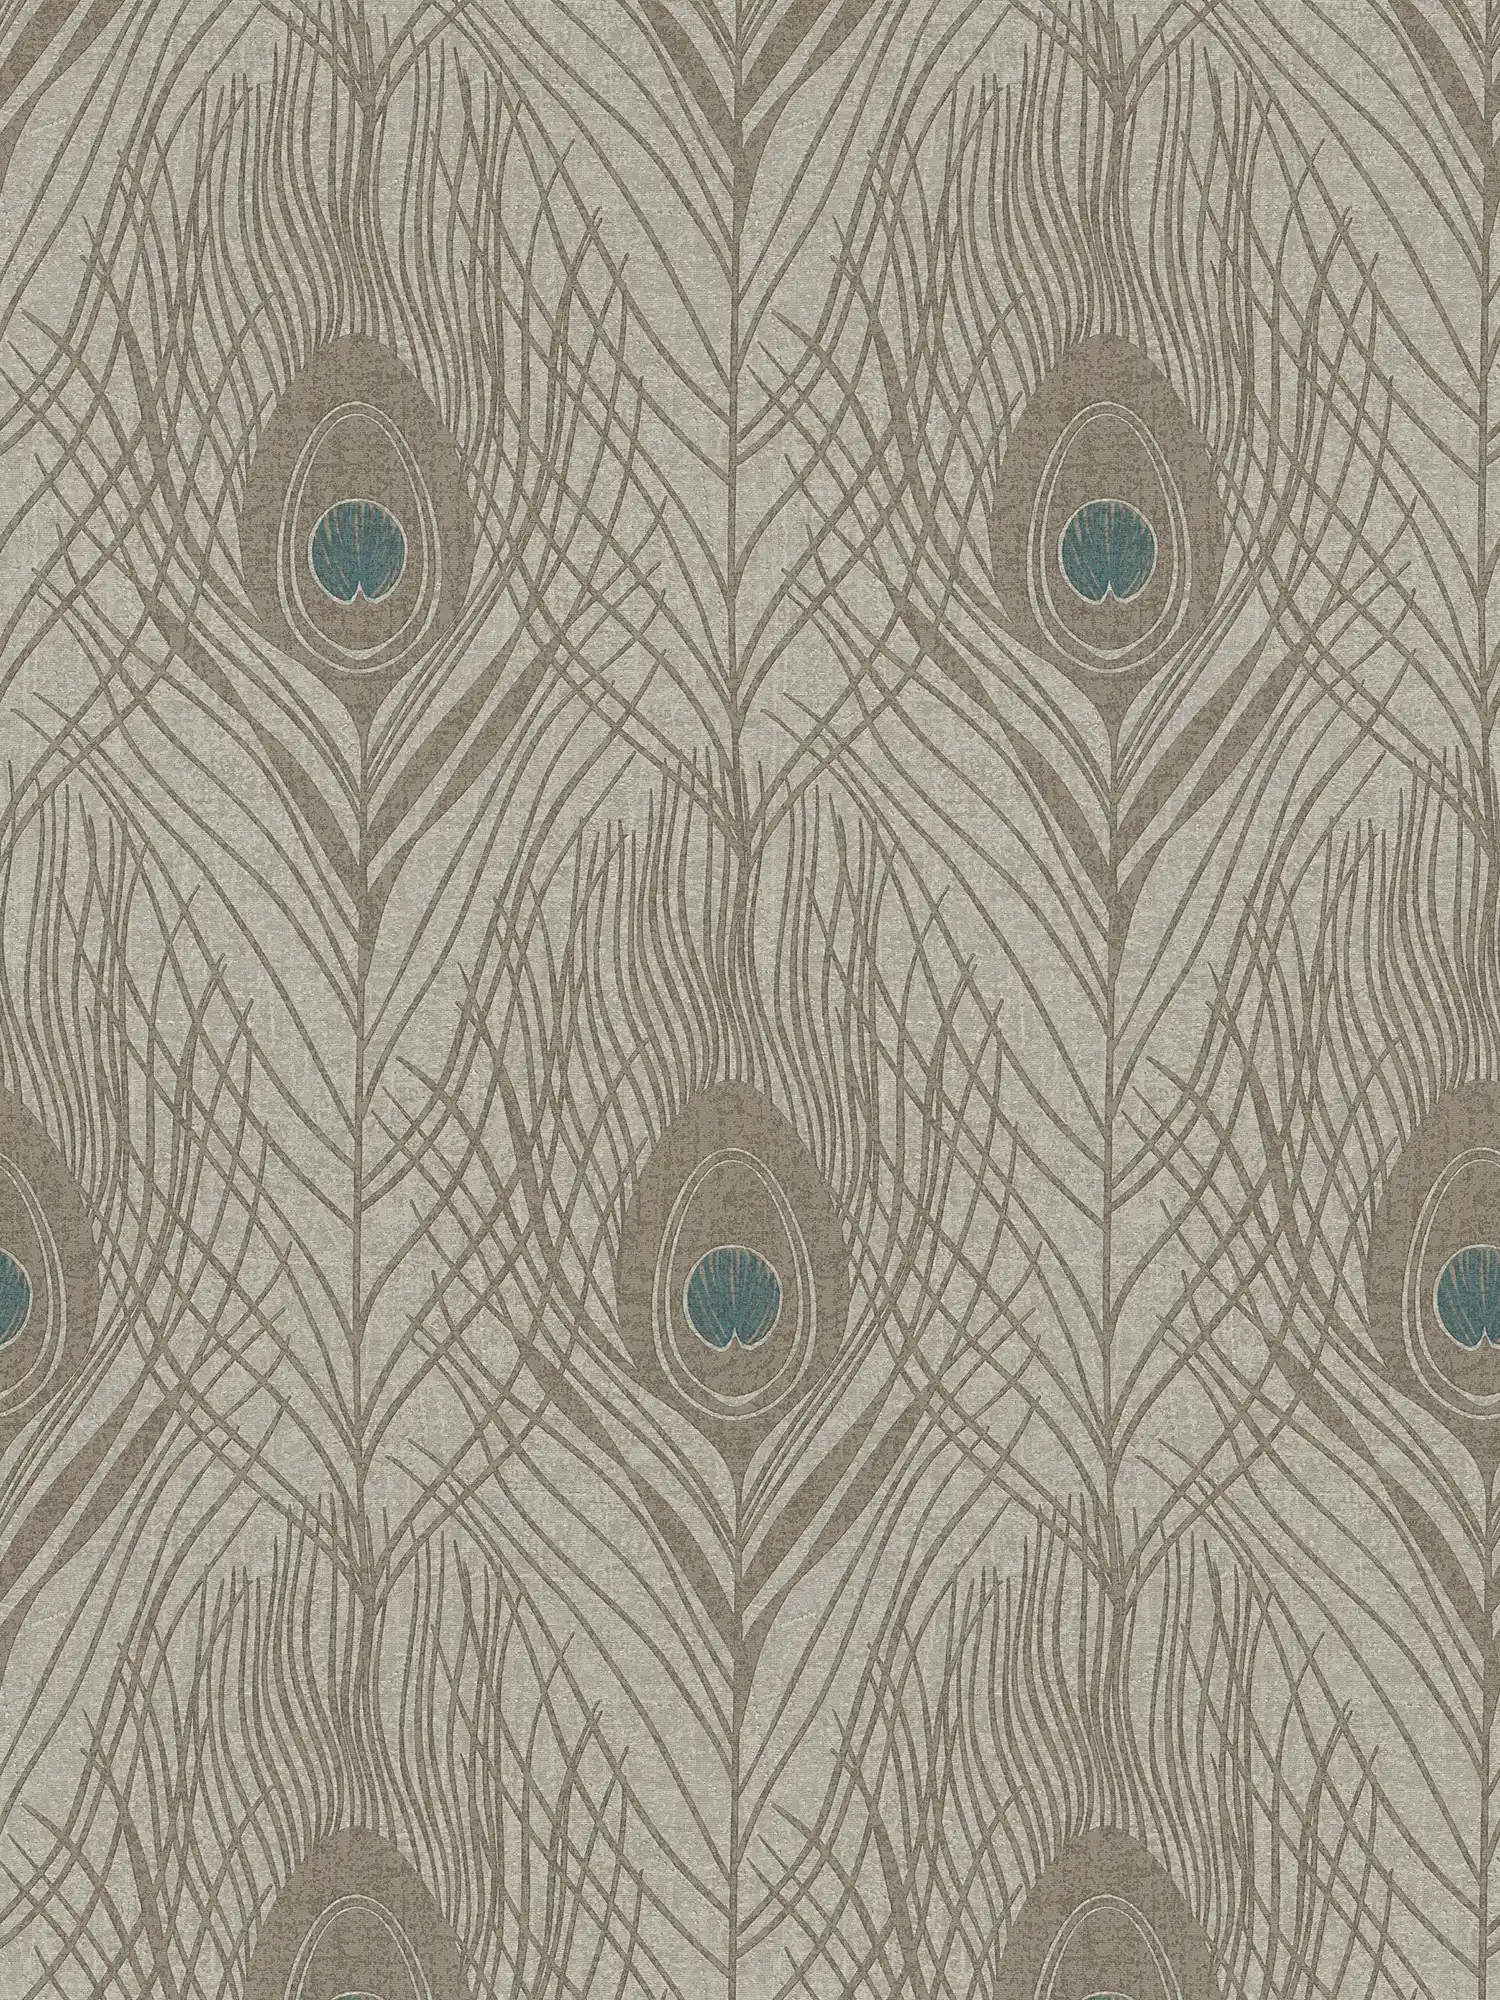 Braune Vliestapete mit Pfauenfedern, detailliert – Braun, Grau, Blau
